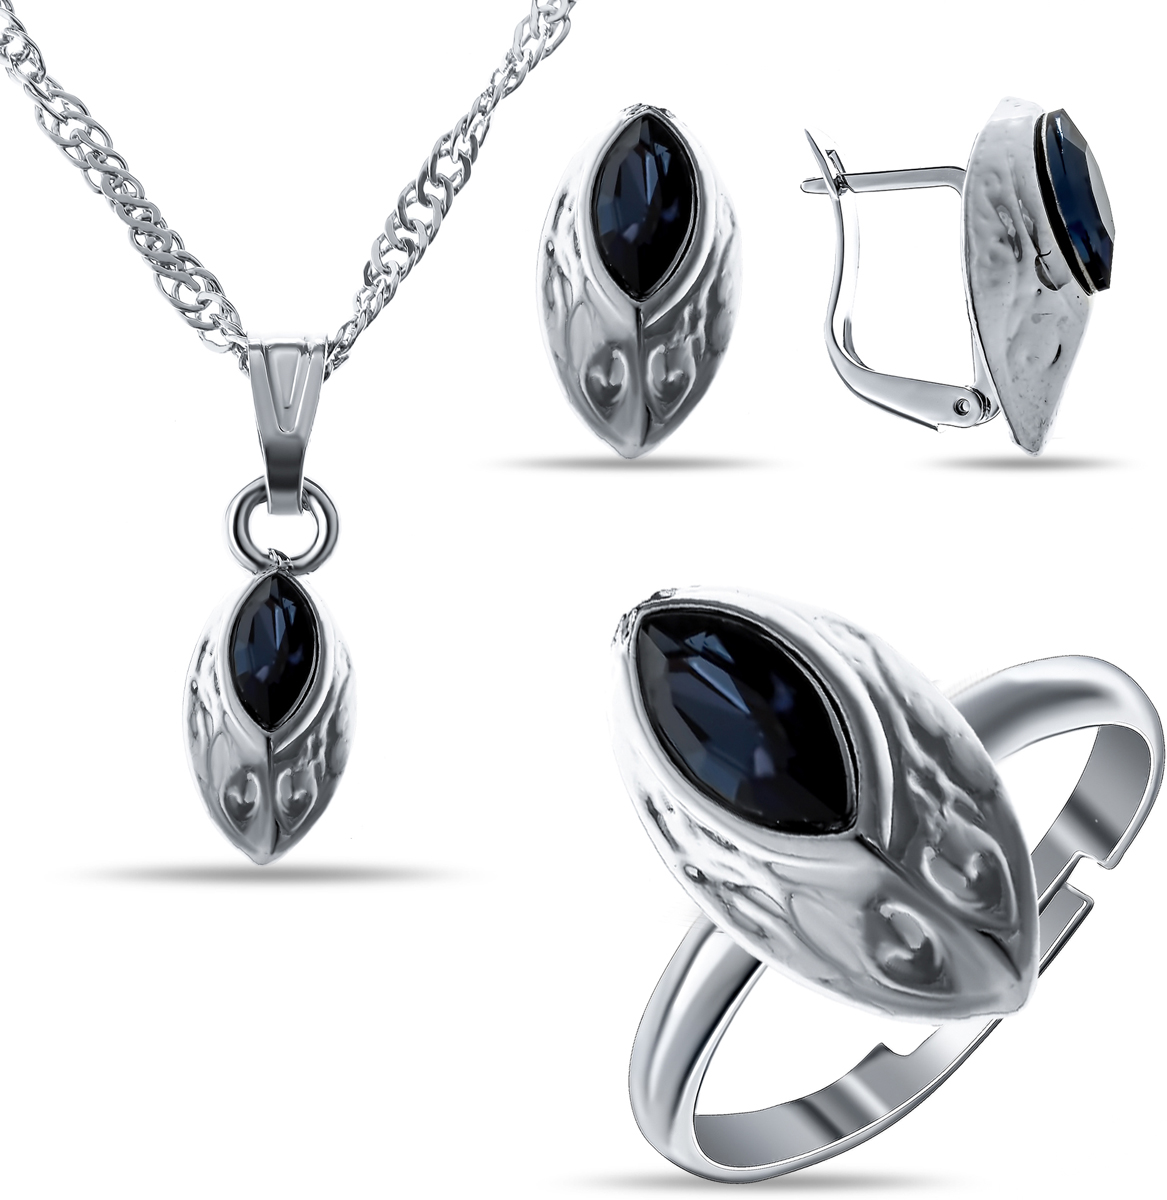 Комплект украшений Teosa: колье, серьги, кольцо, цвет: синий, серебристый. T-SET-138